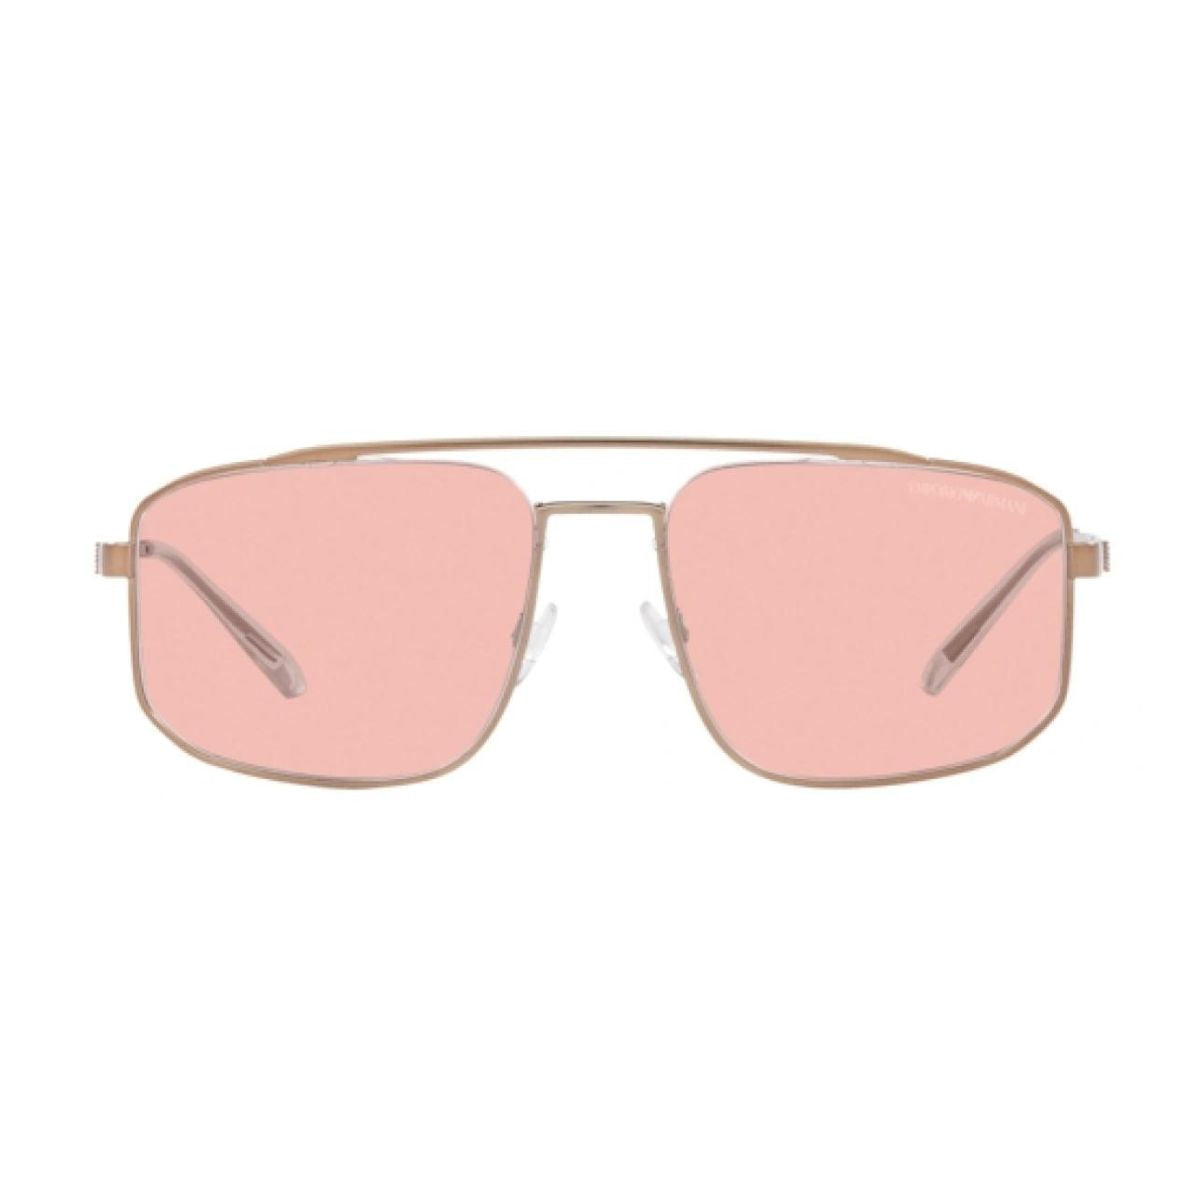 "Emporio Armani EA 2139 3004/5 UV Protection Sunglasses For Men's At Optorium"